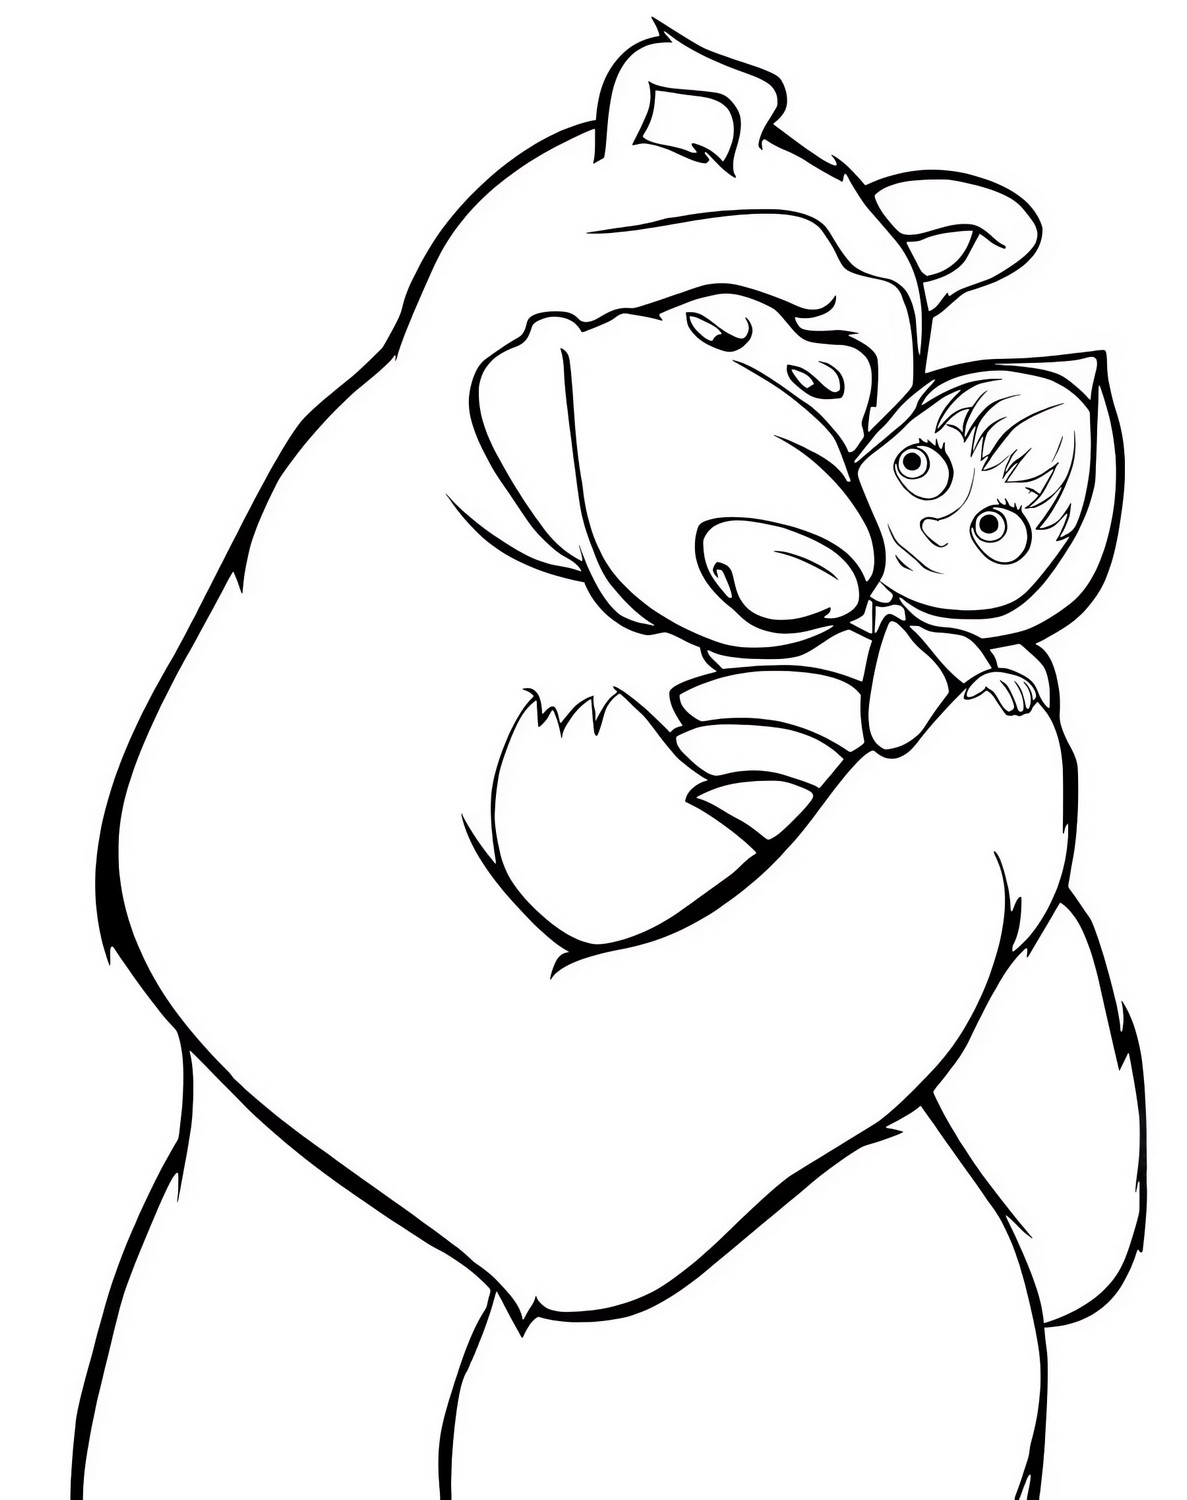 Dibujo 55 de Masha y el oso para imprimir y colorear